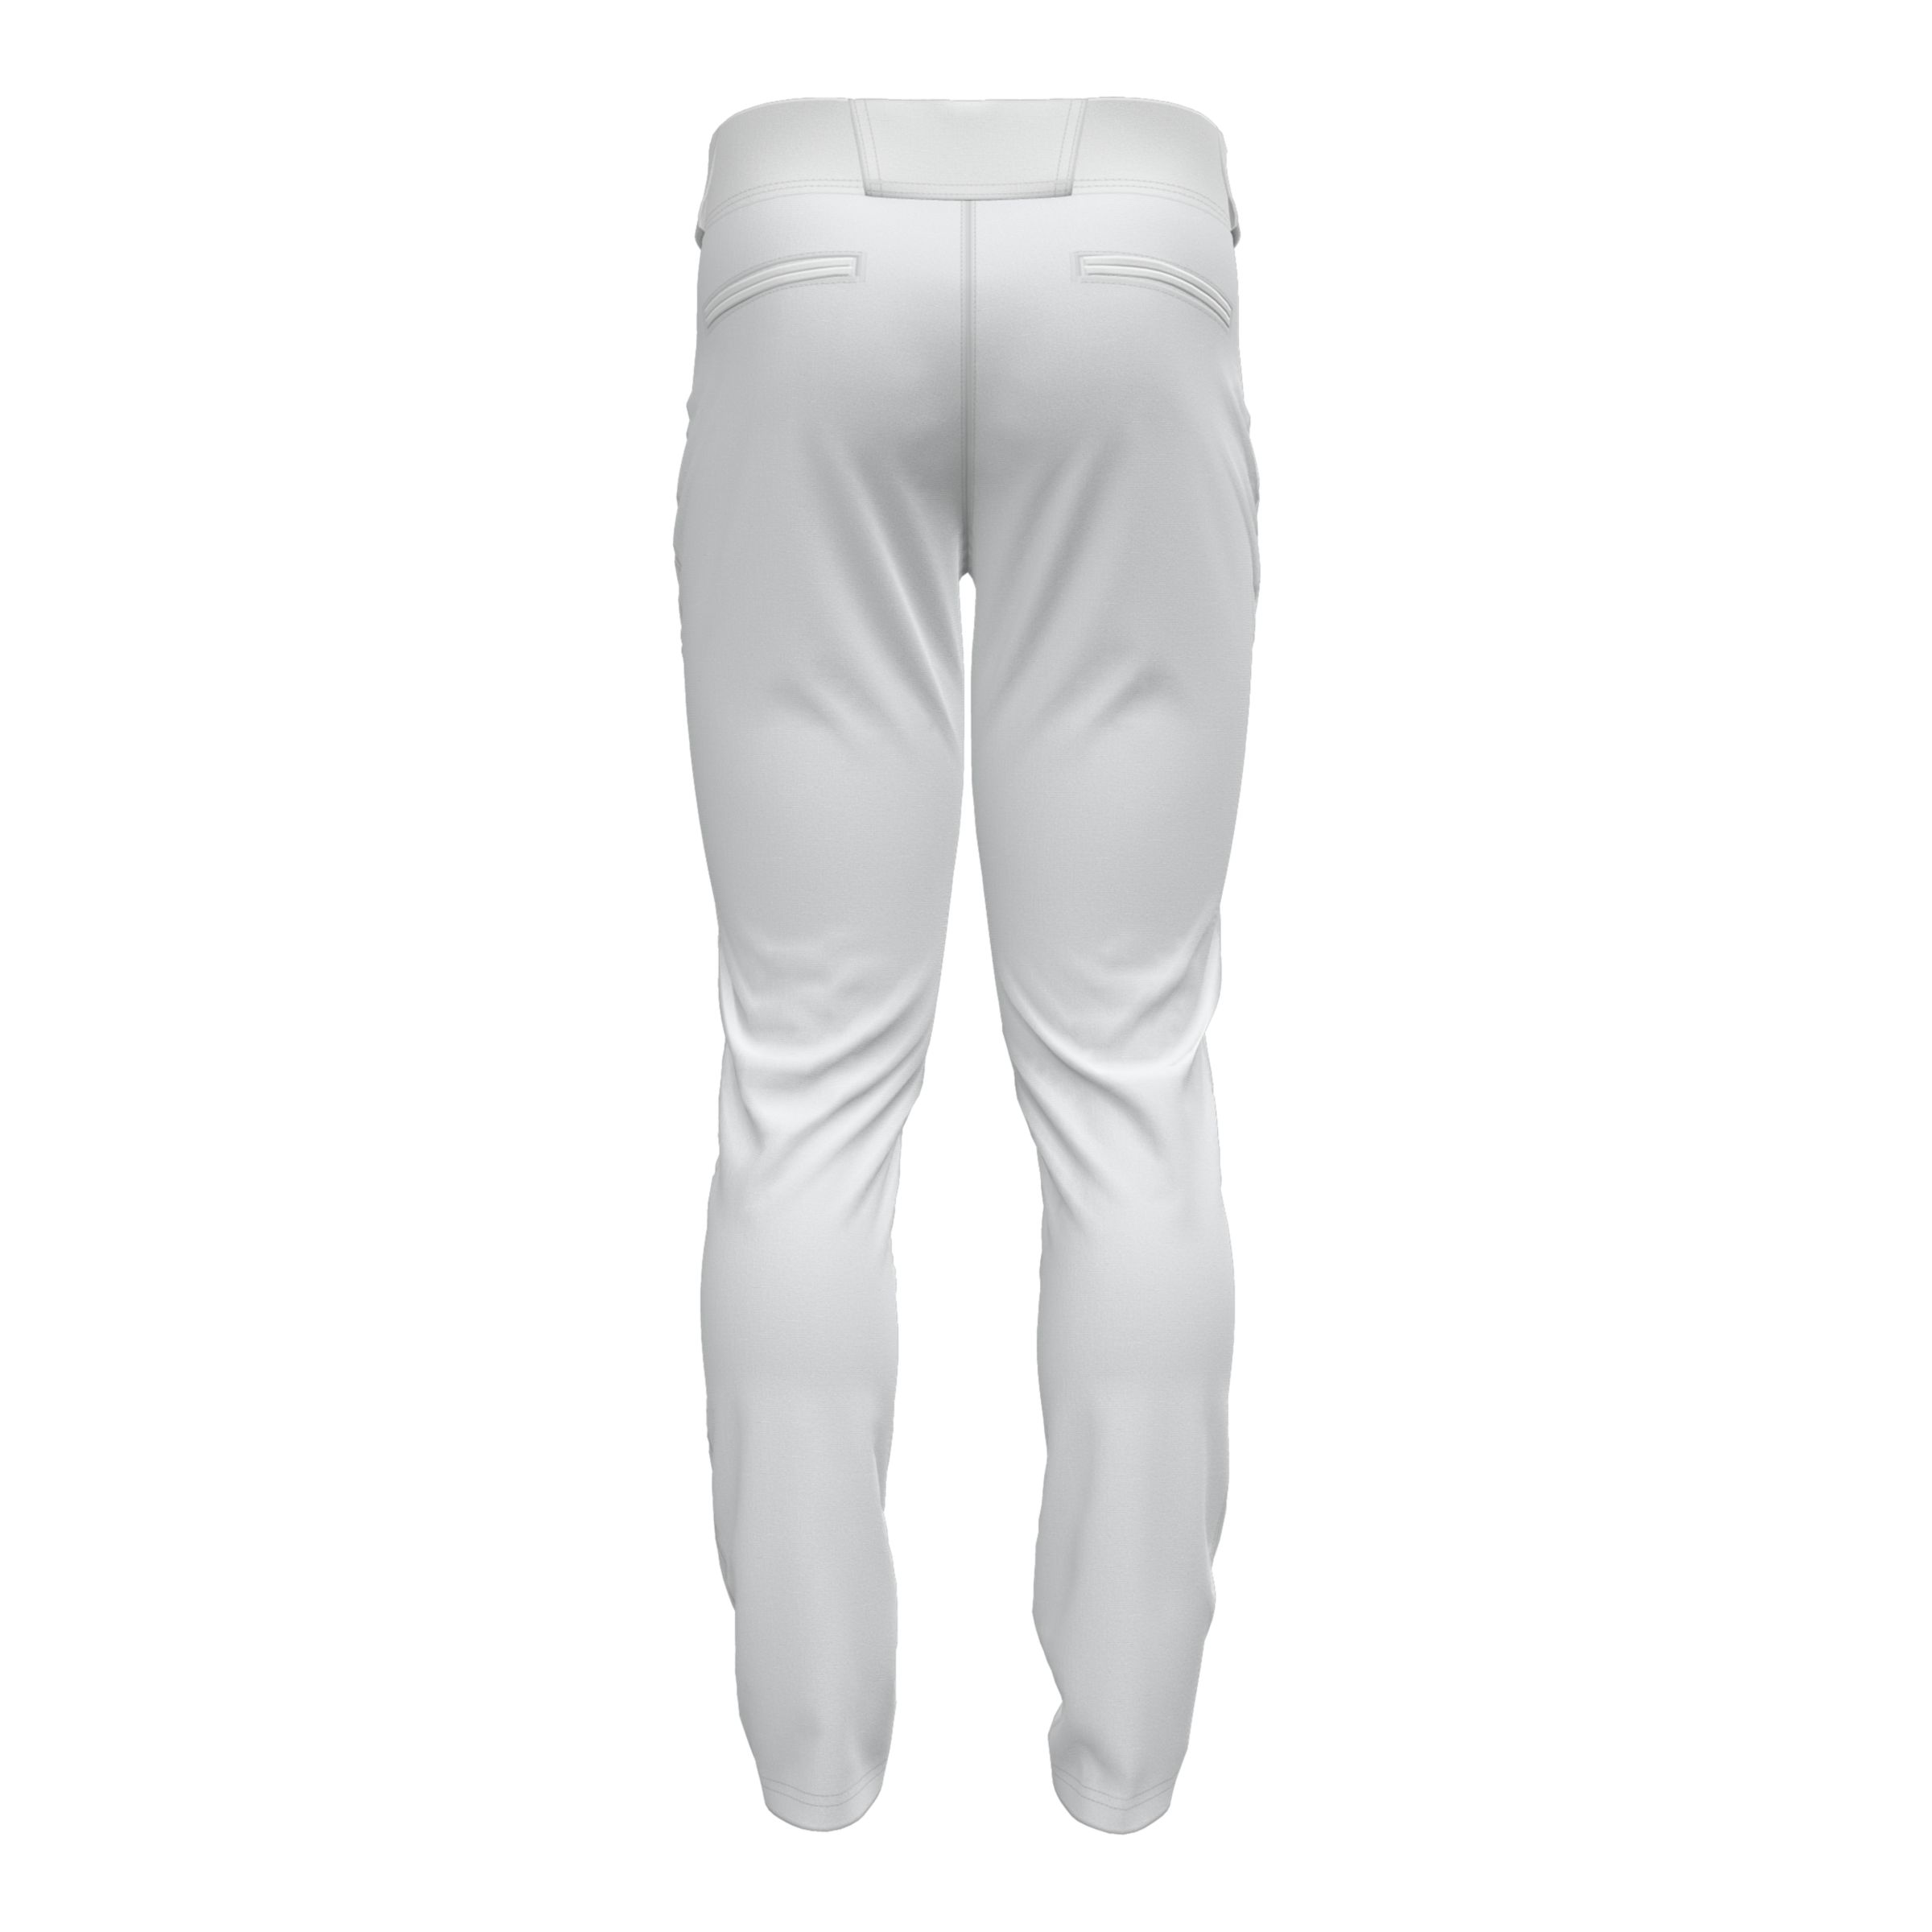 Concepts Sport Distance Men's Solid Knit Pant, Size: Medium, White